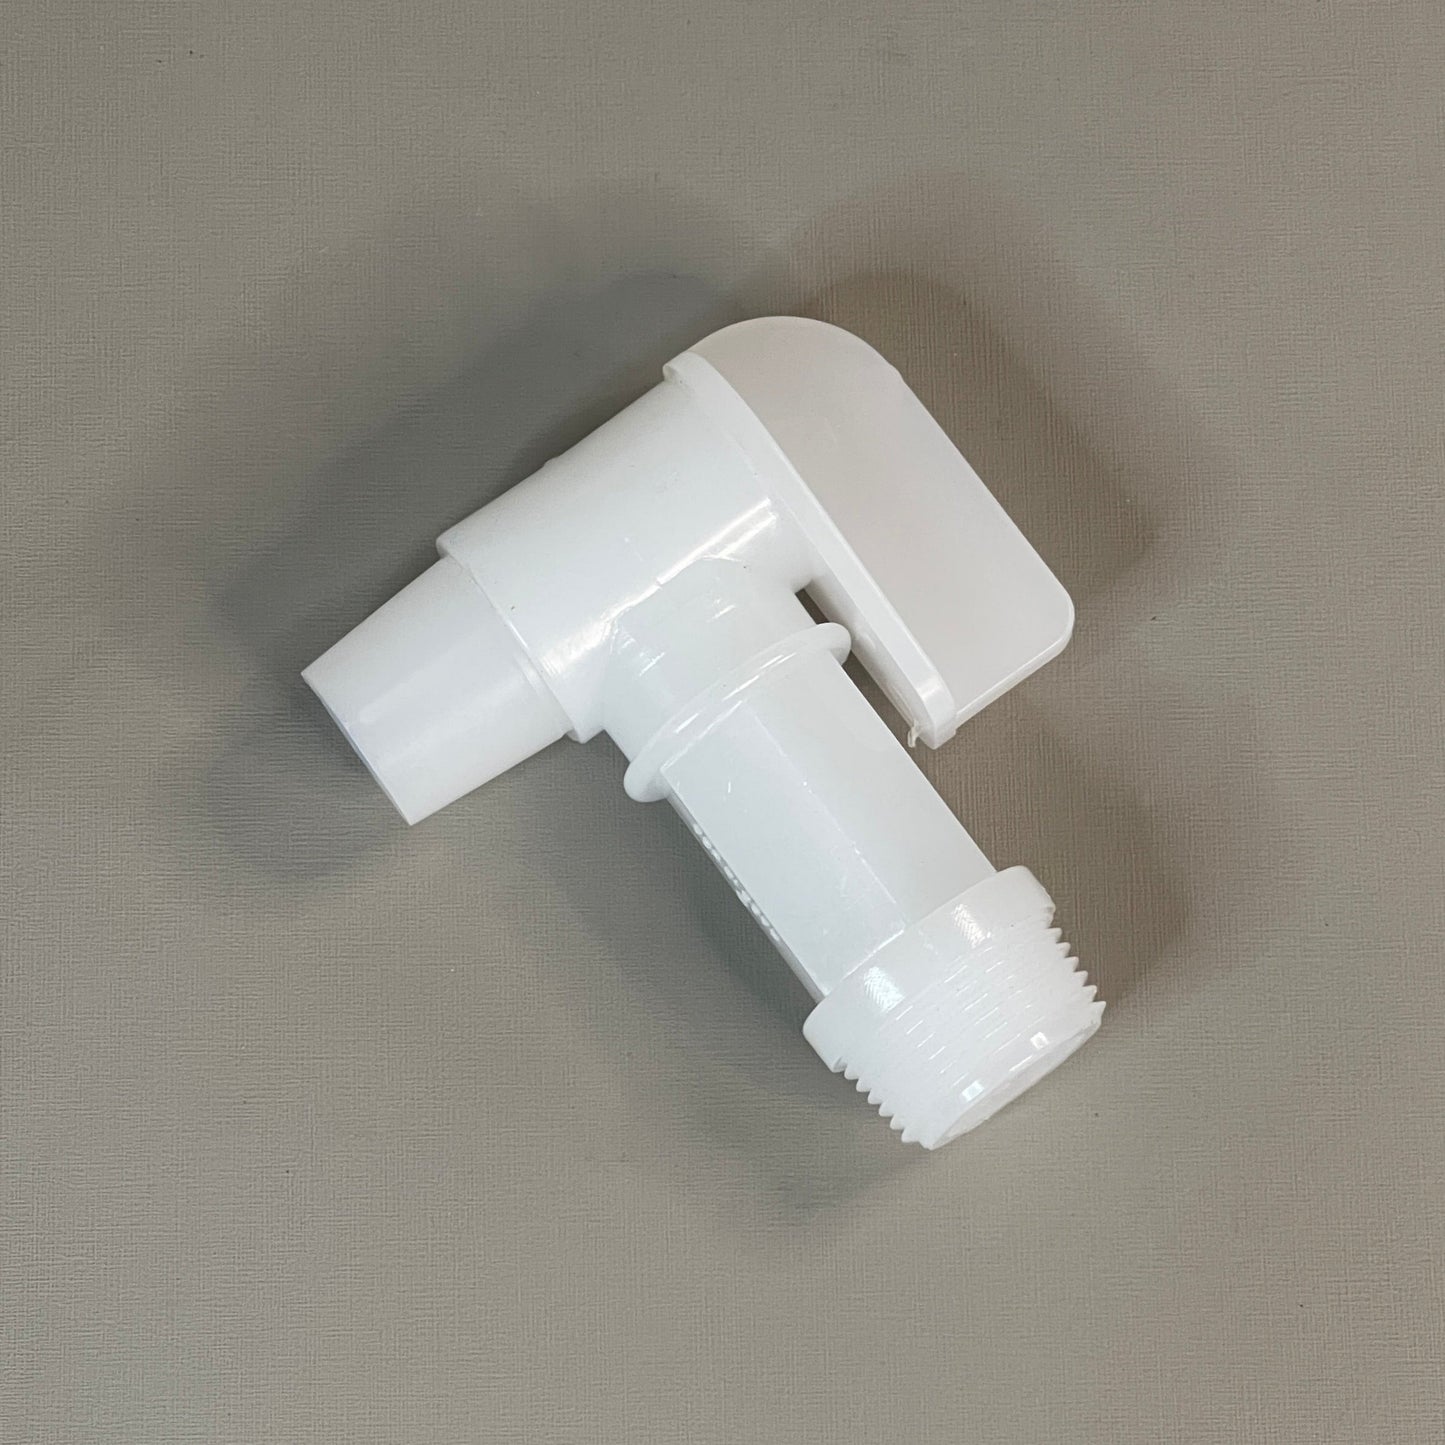 REIKE Flo-Rite Faucet 3/4" 10-PACK Plastic Drum, Barrel, Jug Faucet, Spigot White (New)